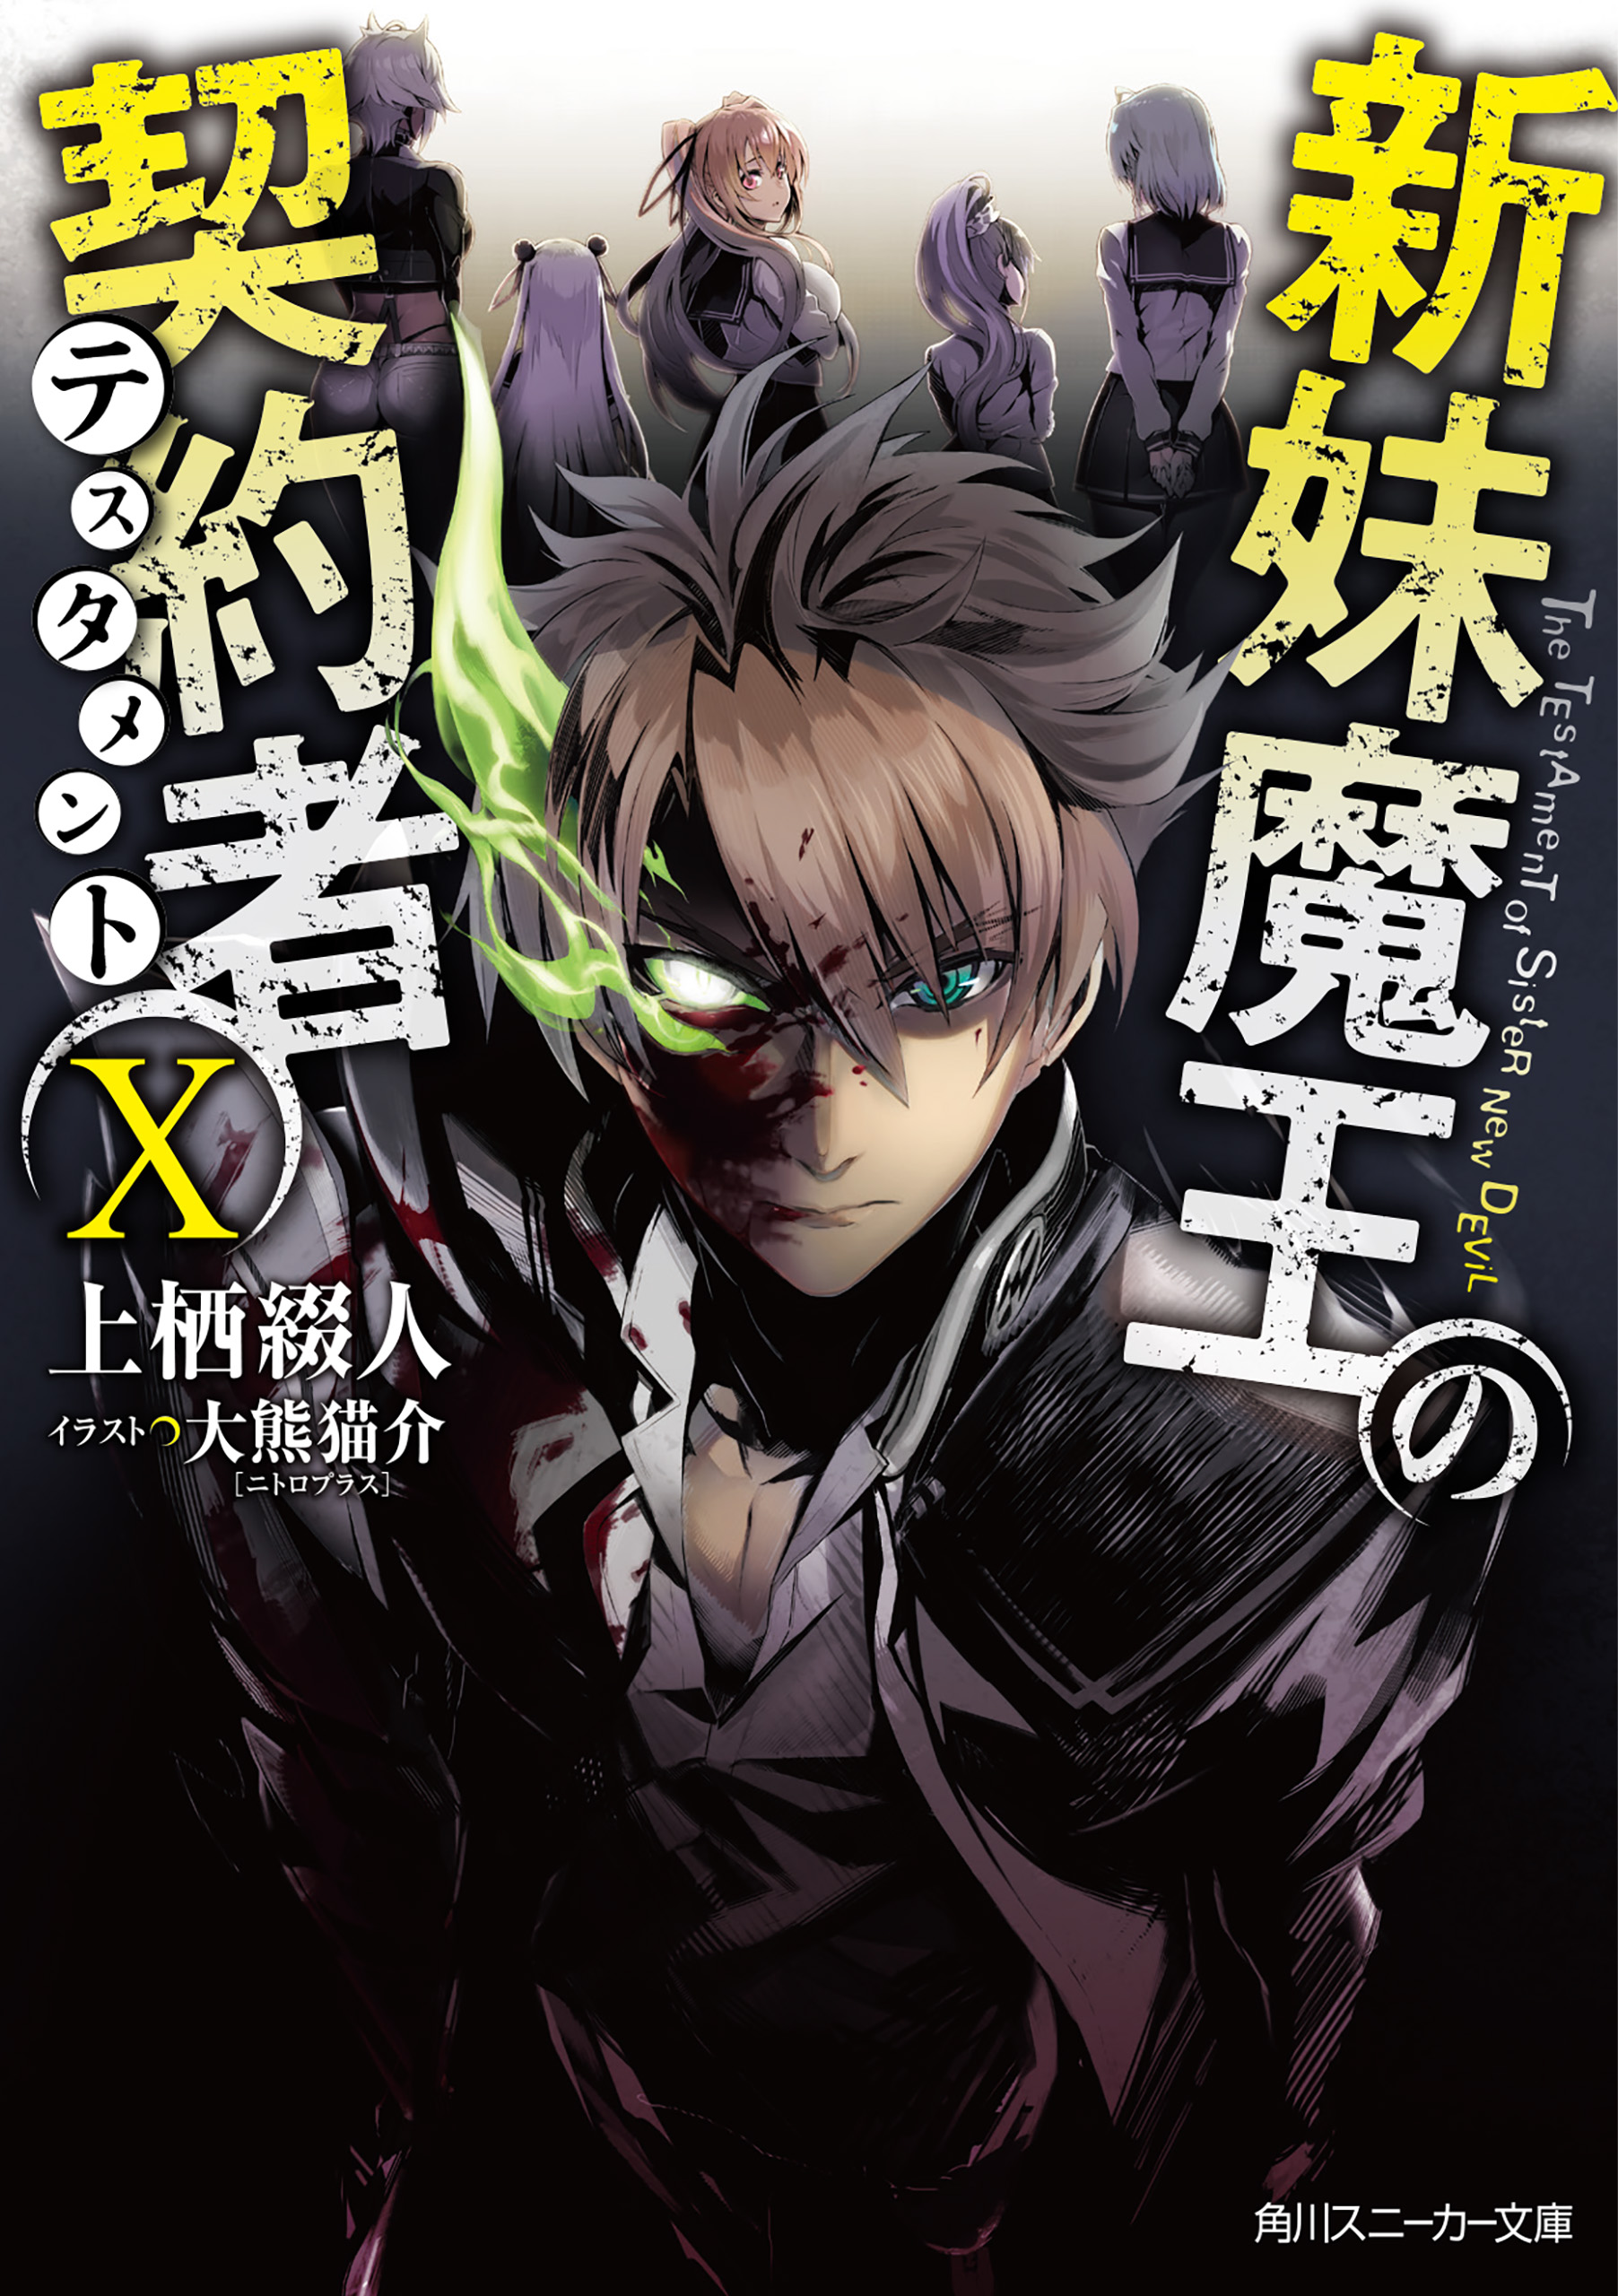 NEWS / Novo Jogo de Isekai Maou - Anime X Novel